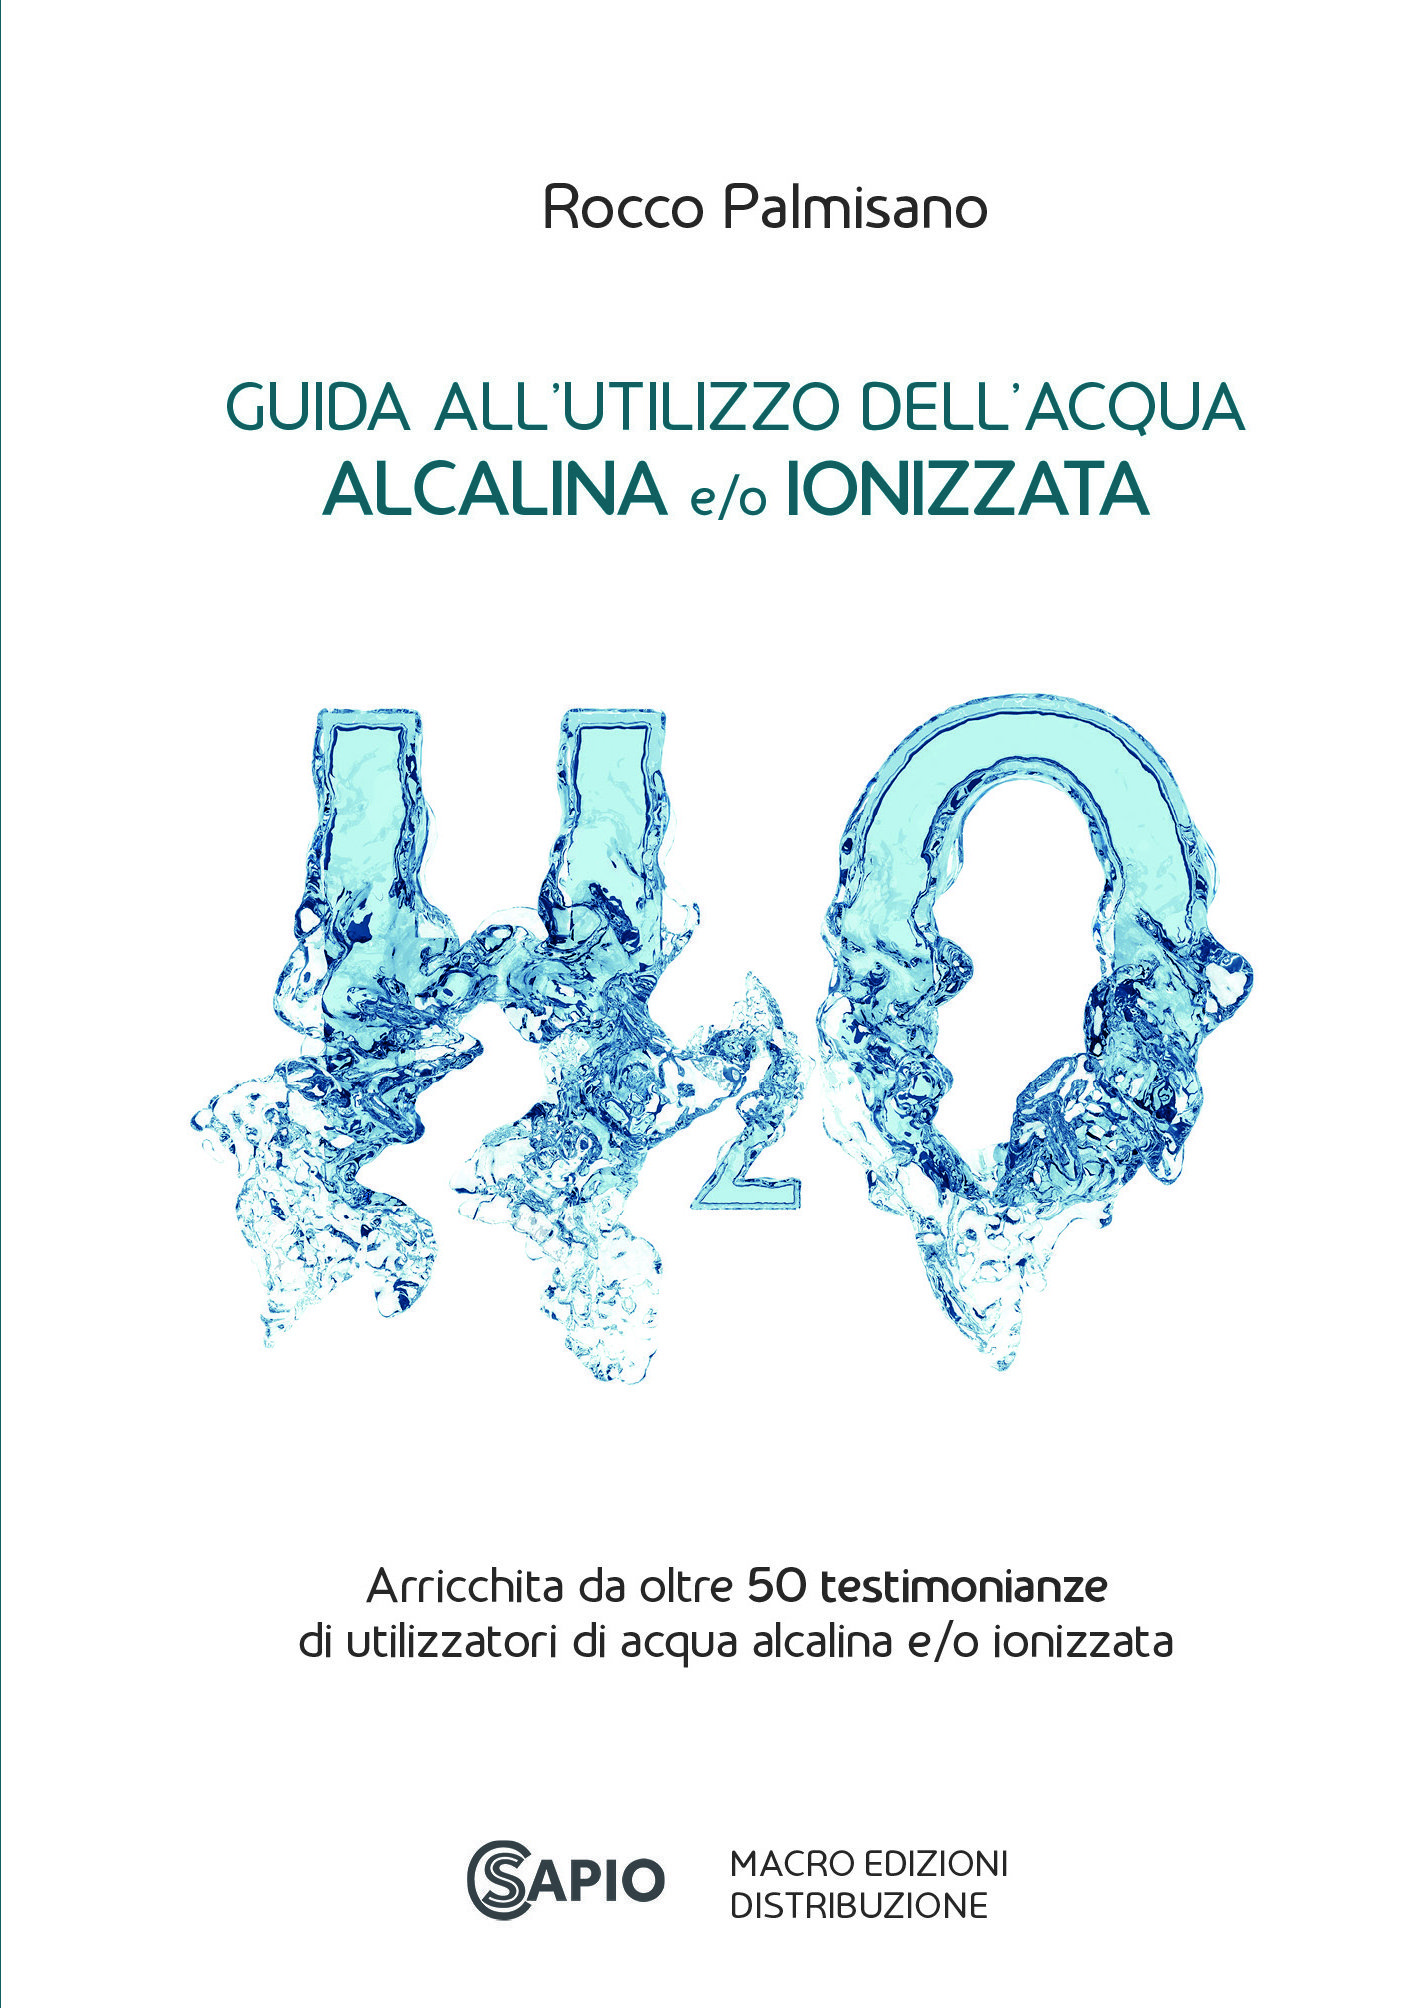 Guida all'Utilizzo dell'Acqua Alcalina e/o Ionizzata - Rocco Palmisano